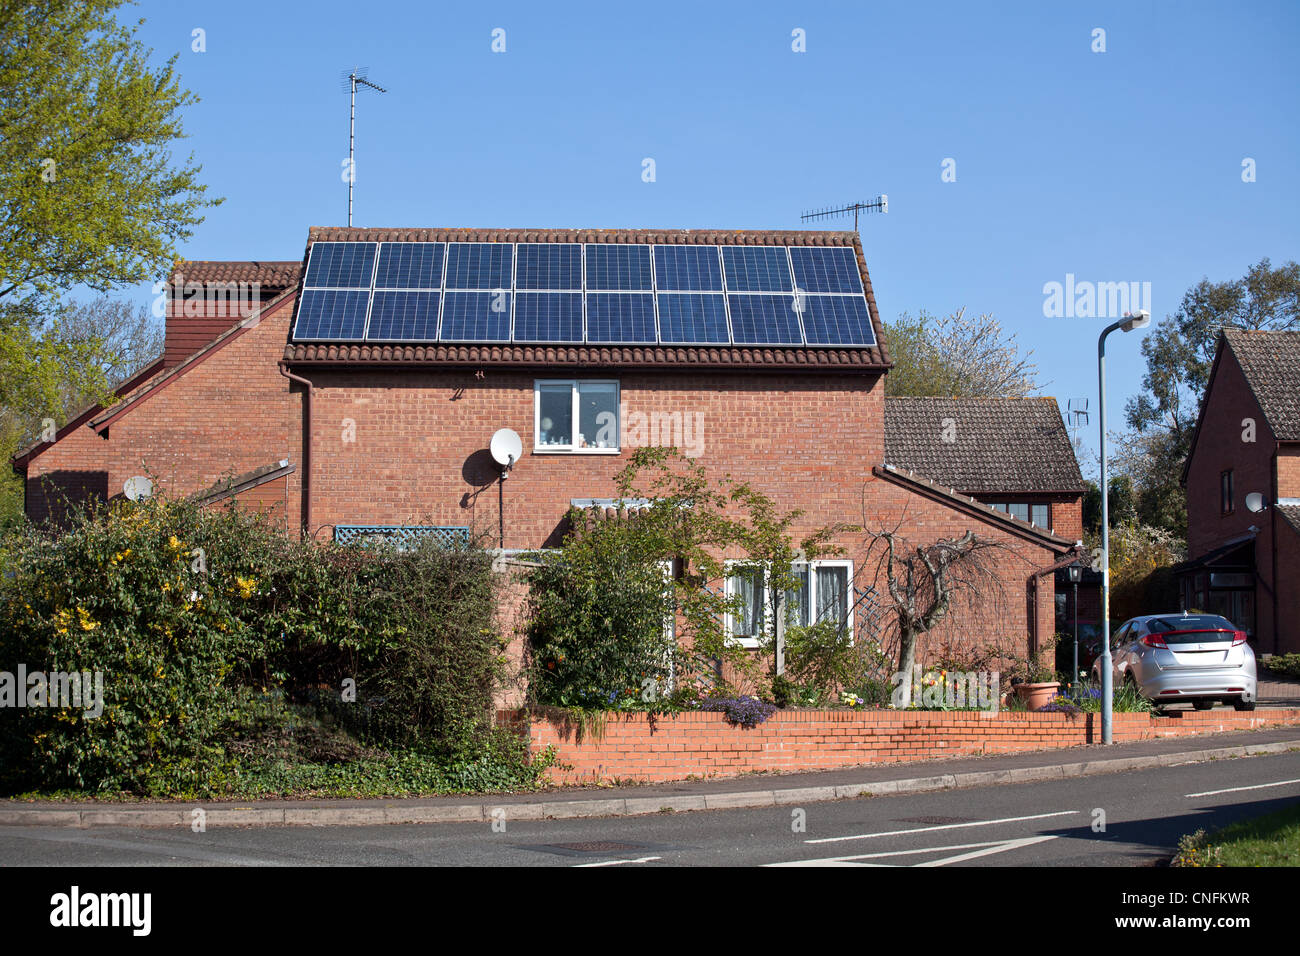 Des panneaux solaires photovoltaïques sur une maison d'habitation dans le Worcestershire, Royaume-Uni. Banque D'Images